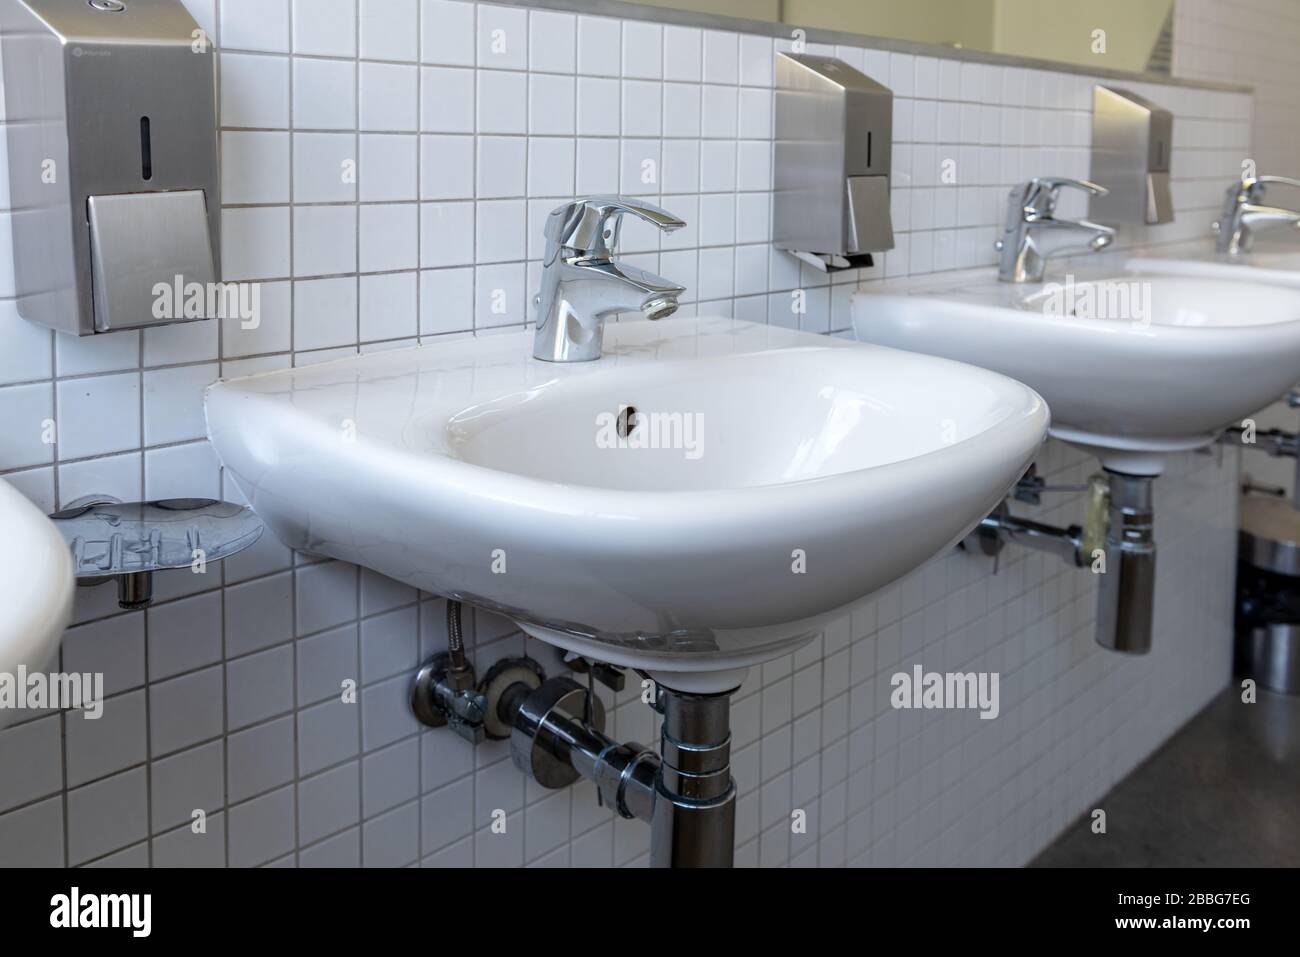 Rangée d'évier en porcelaine blanche dans les toilettes publiques. Concept de protection de l'intégrité antivirus Banque D'Images